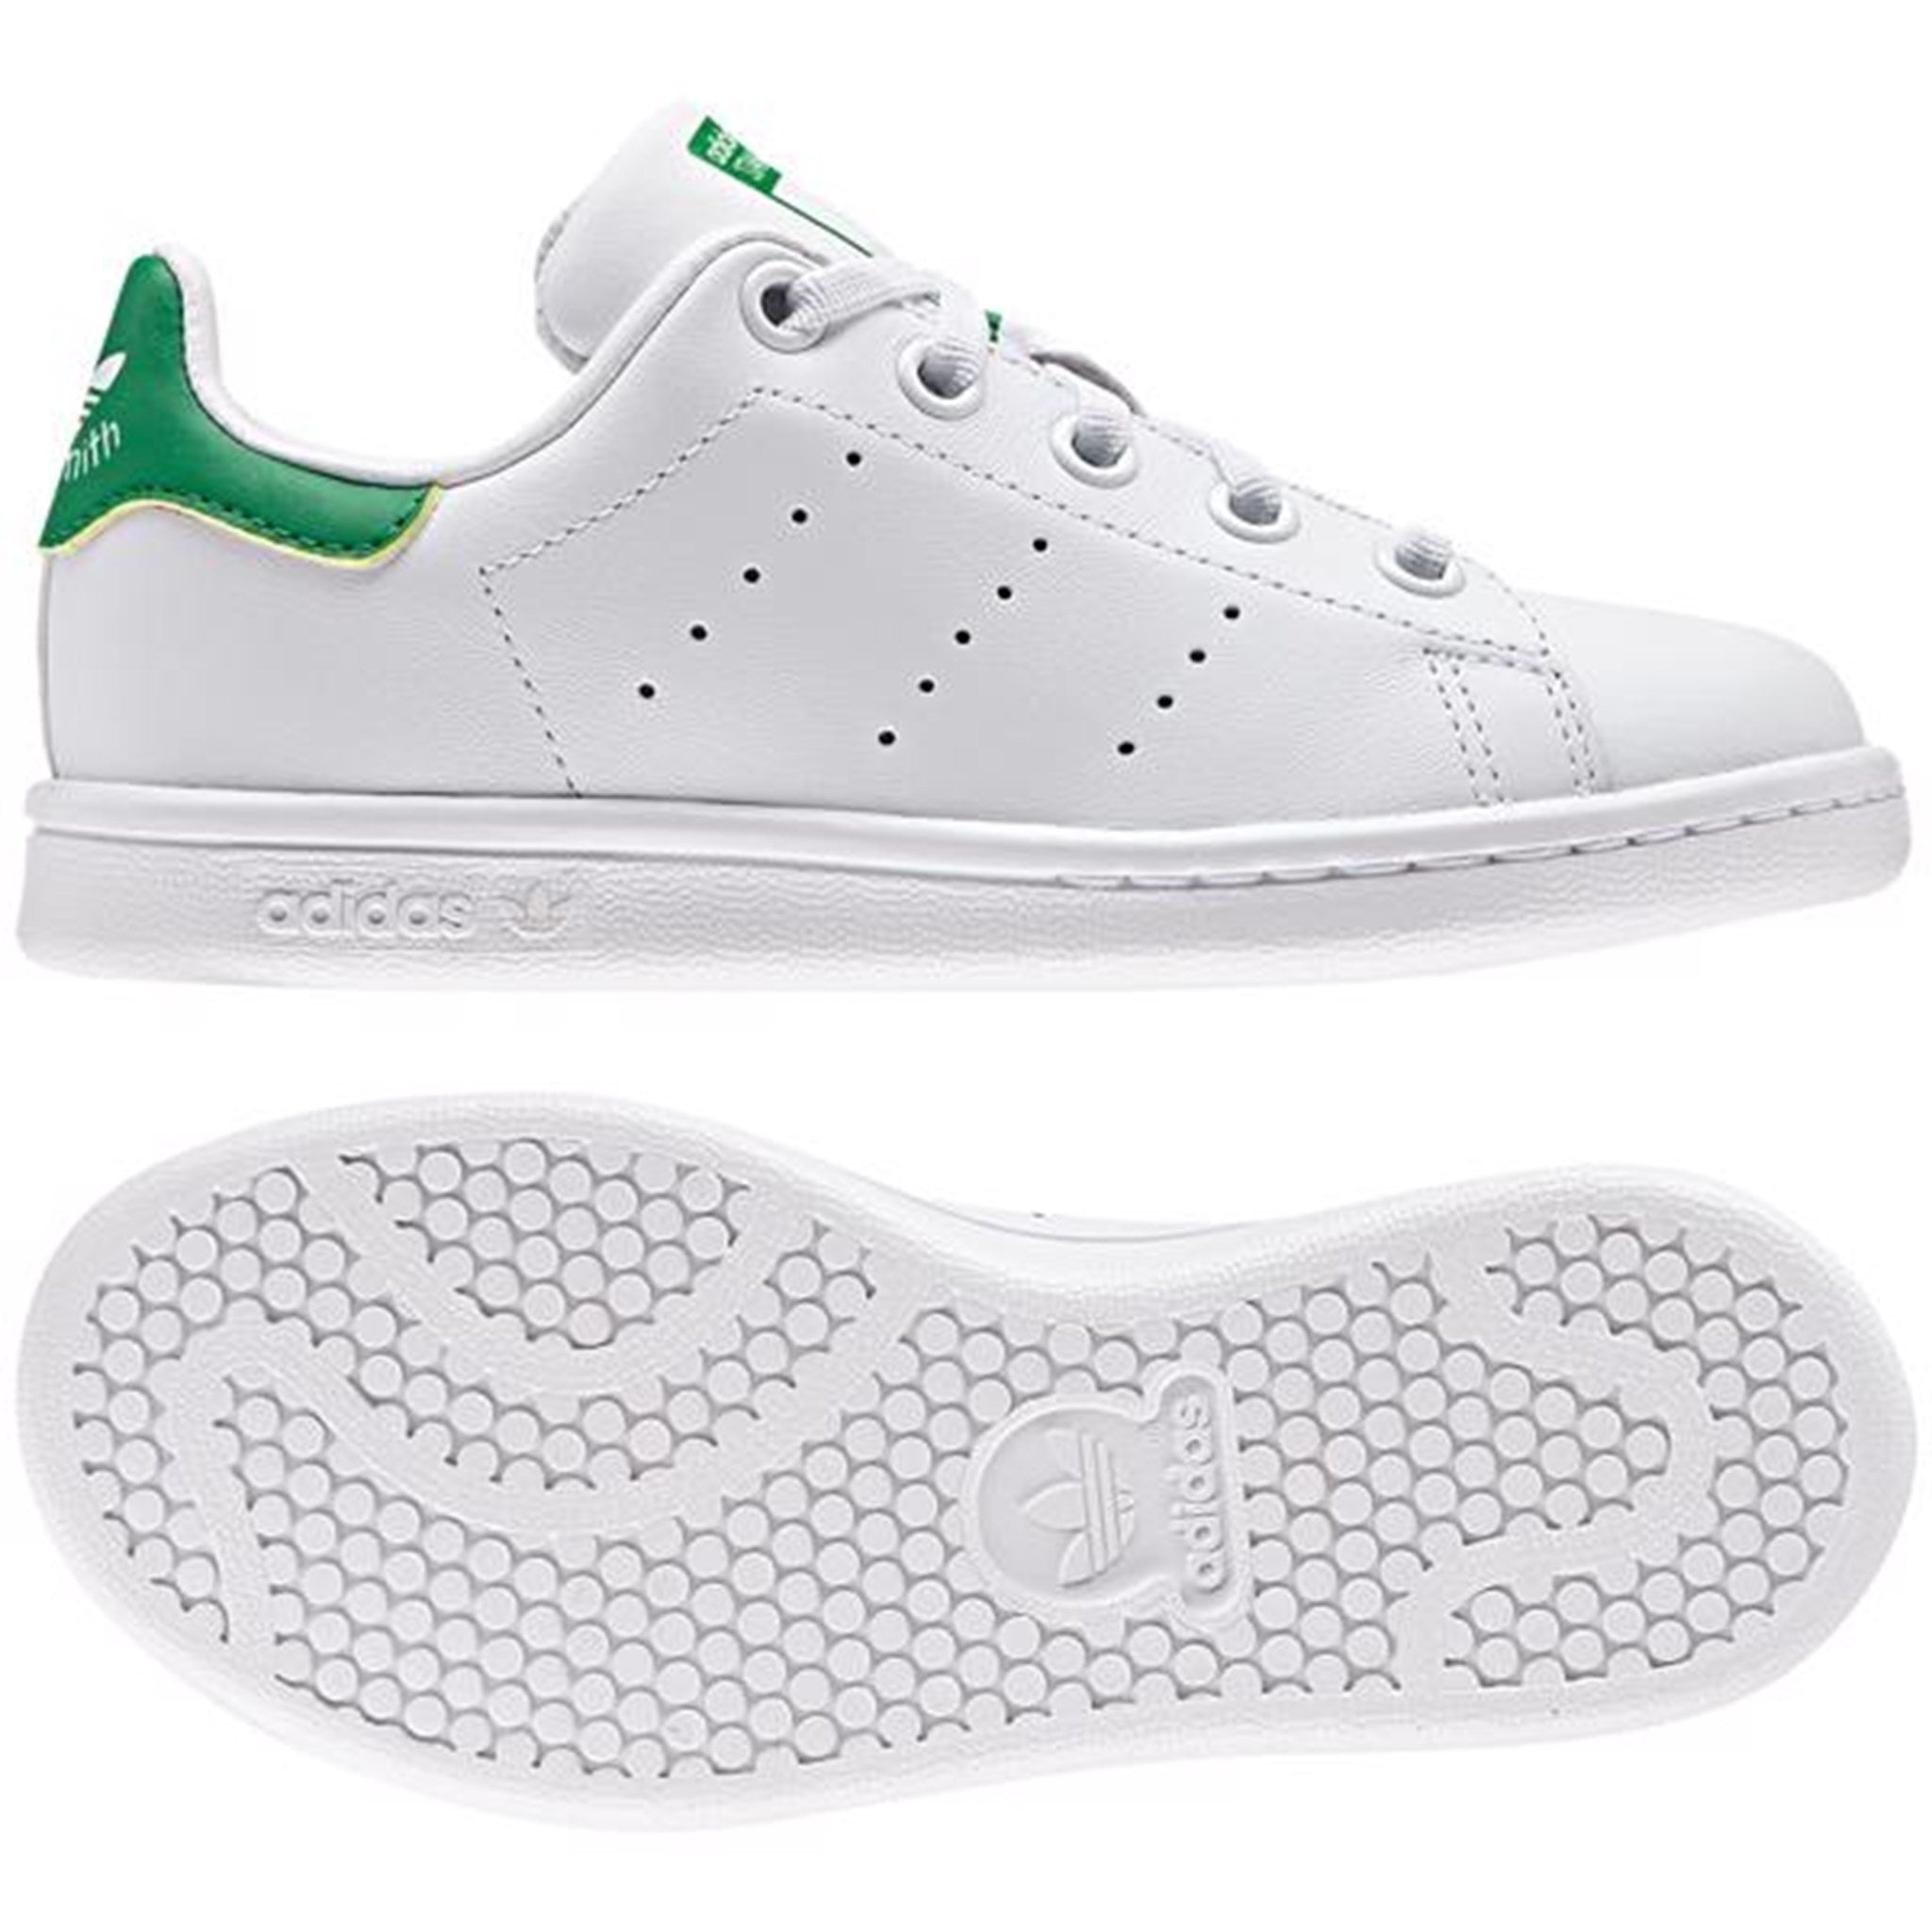 adidas Stan Smith Sneakers White/Green 2